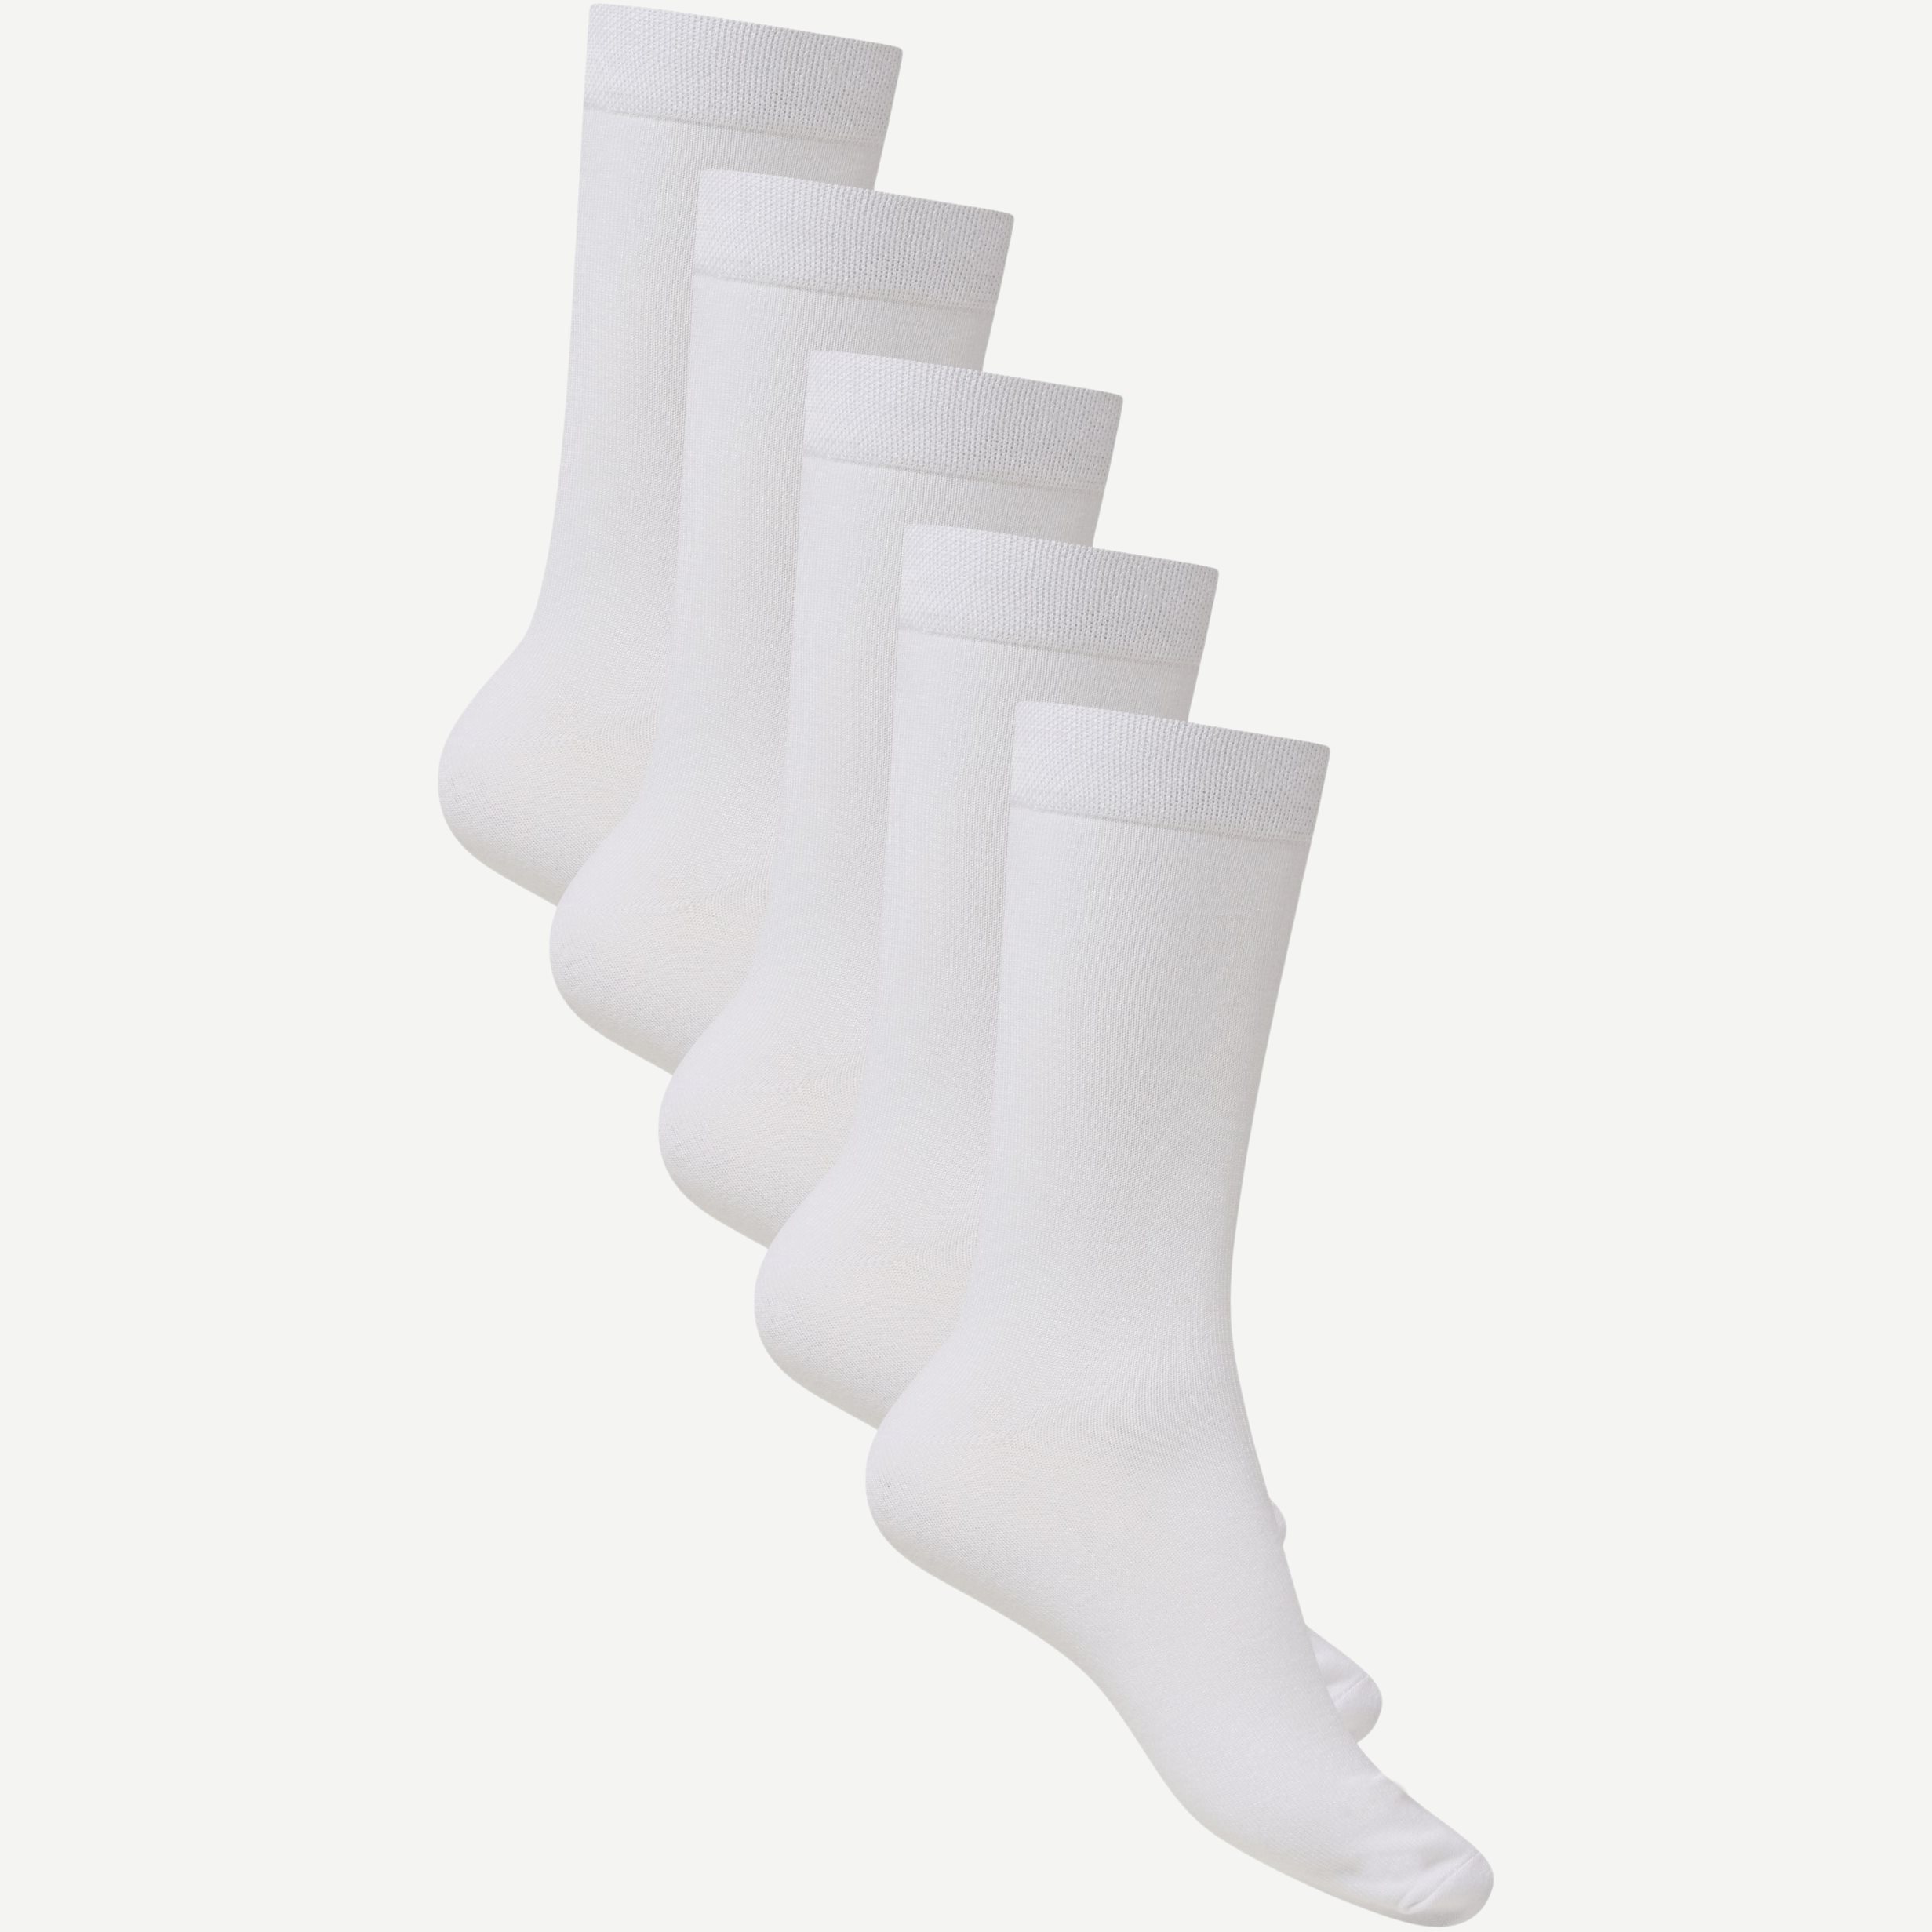 URBAN QUEST Socks 1430 5-PACK BAMBOO BASIC SOCKS White